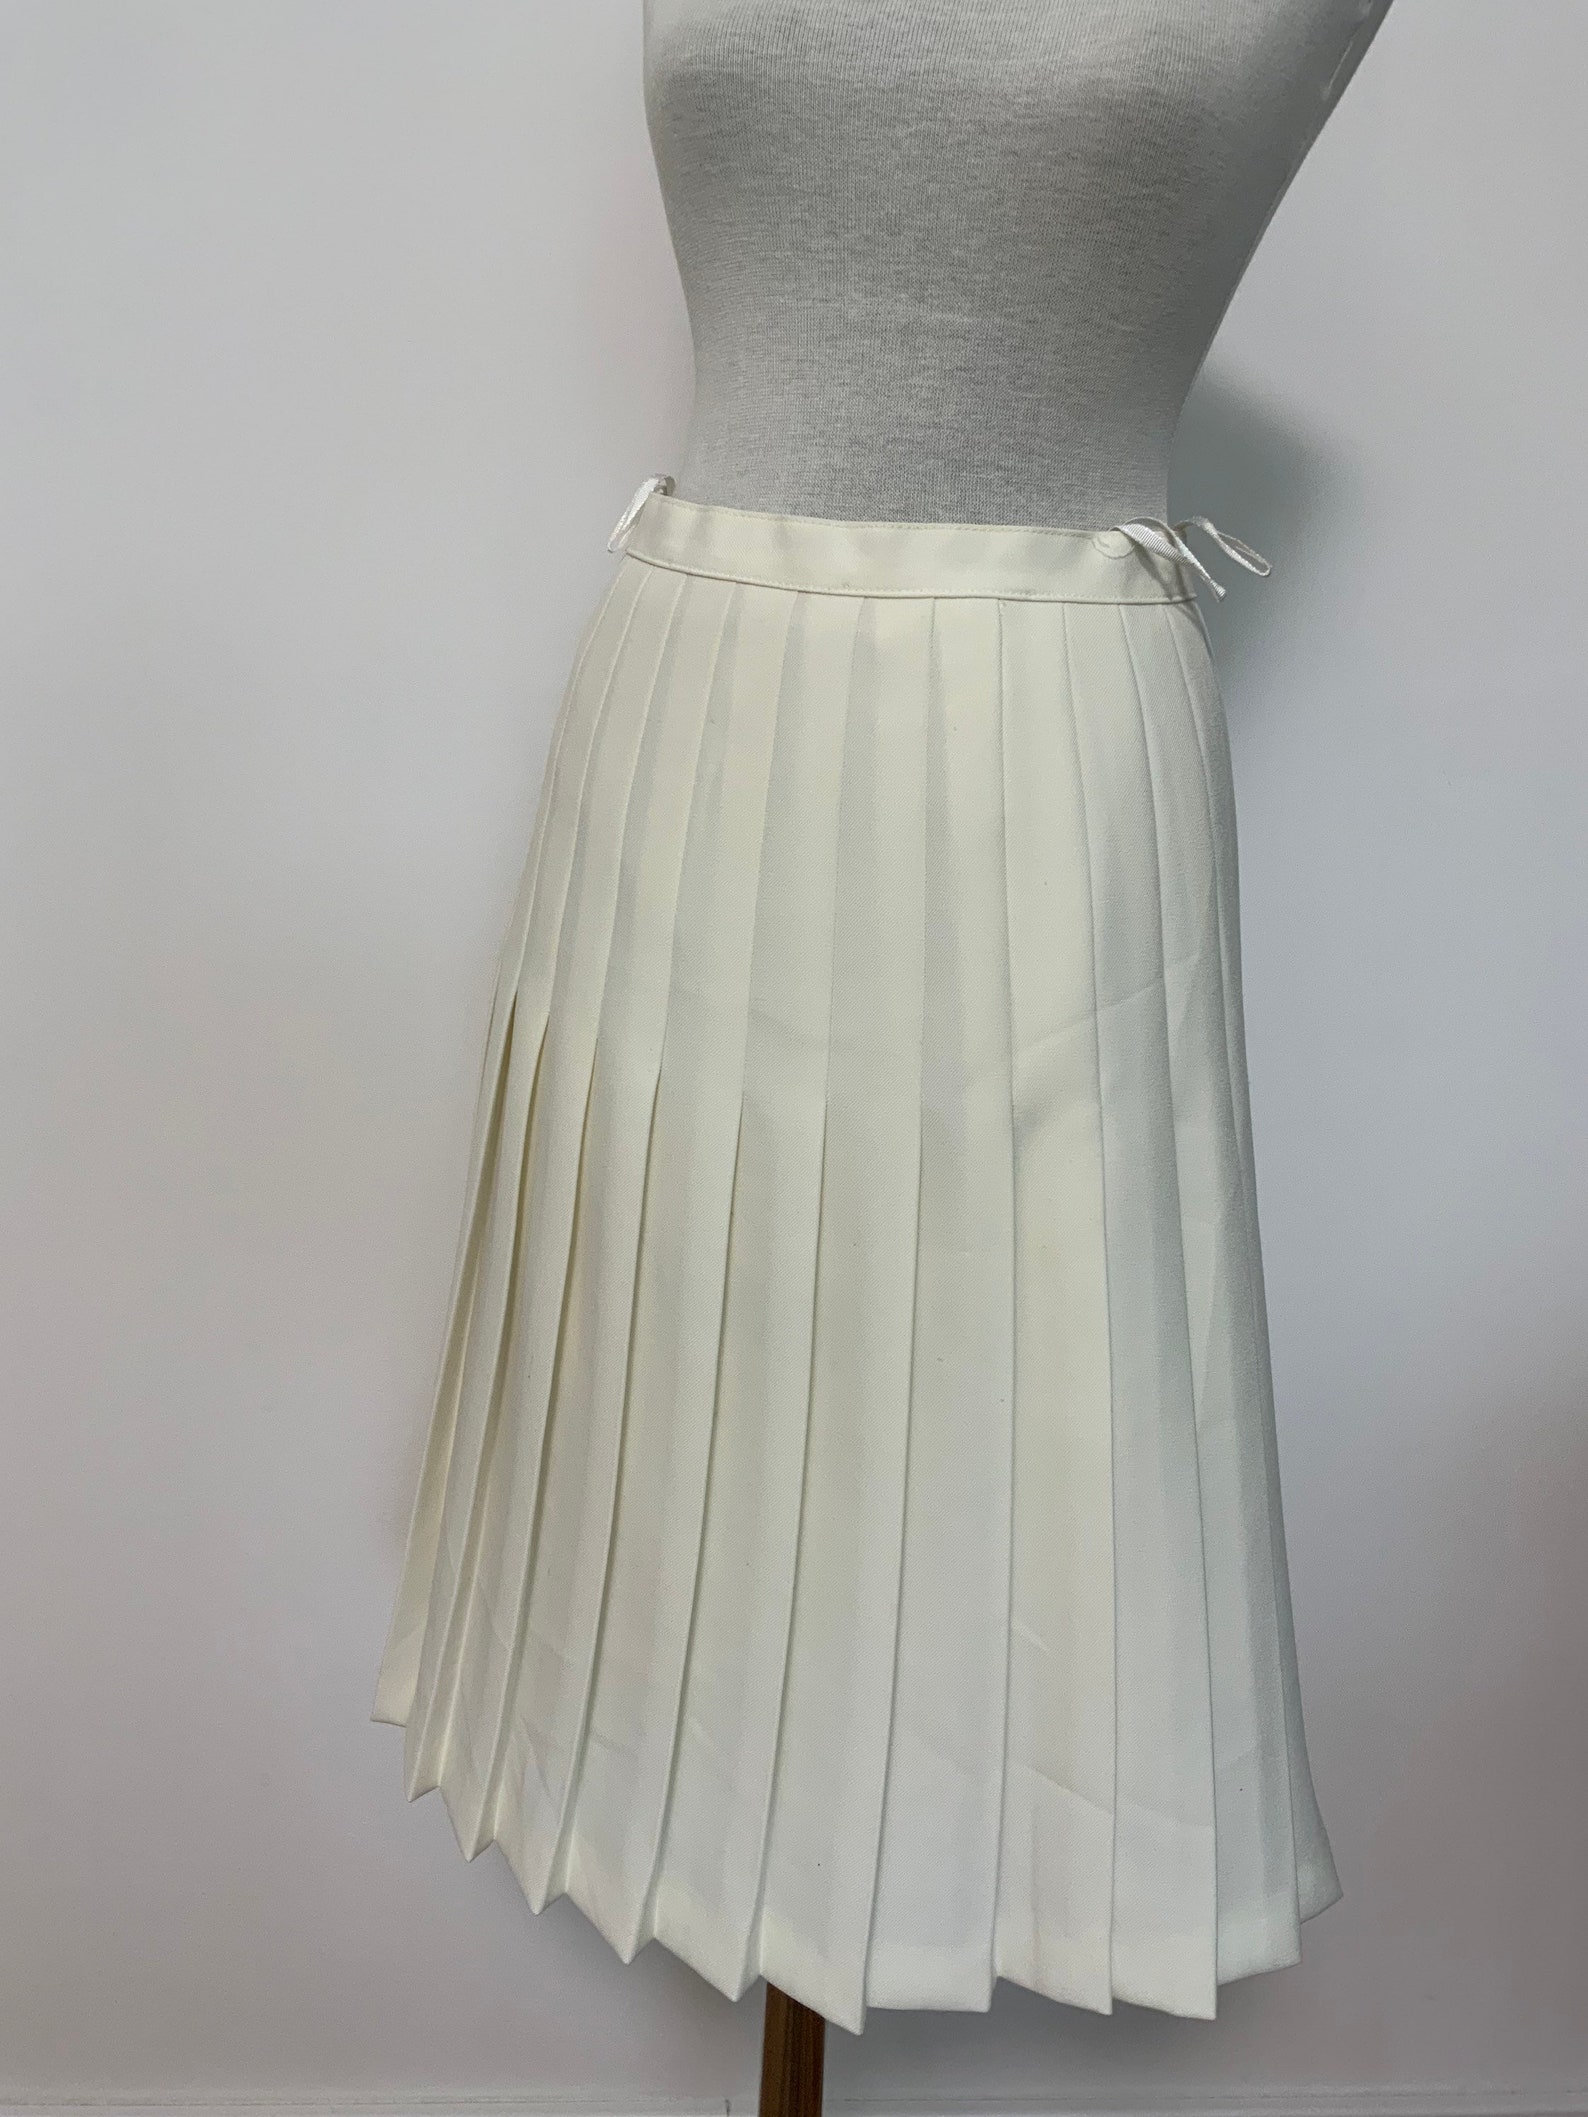 Off White Vintage Pleated Skirt Office Skirt Office Skirt - Etsy